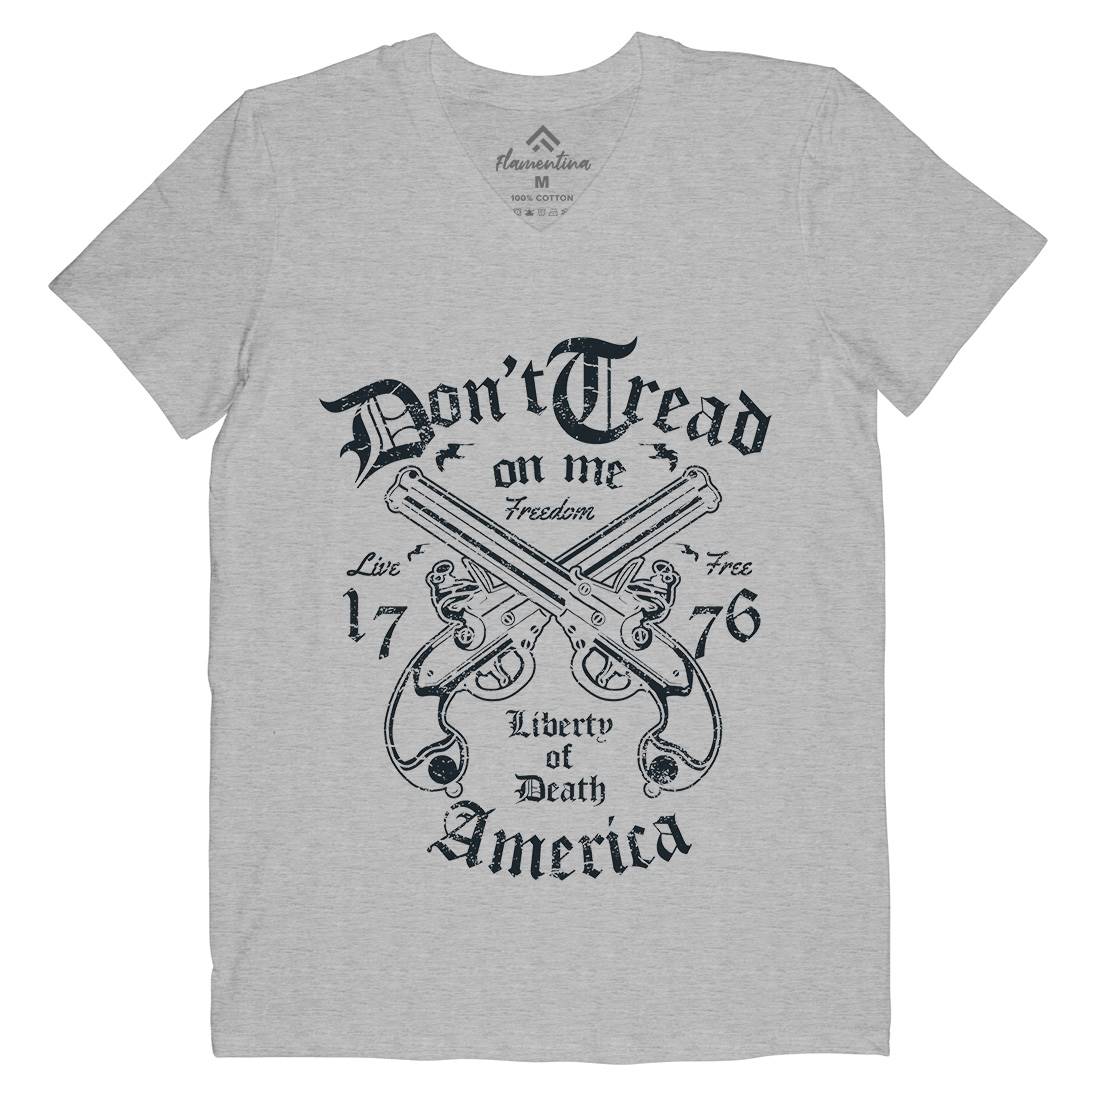 Liberty Of Death Mens Organic V-Neck T-Shirt American A084